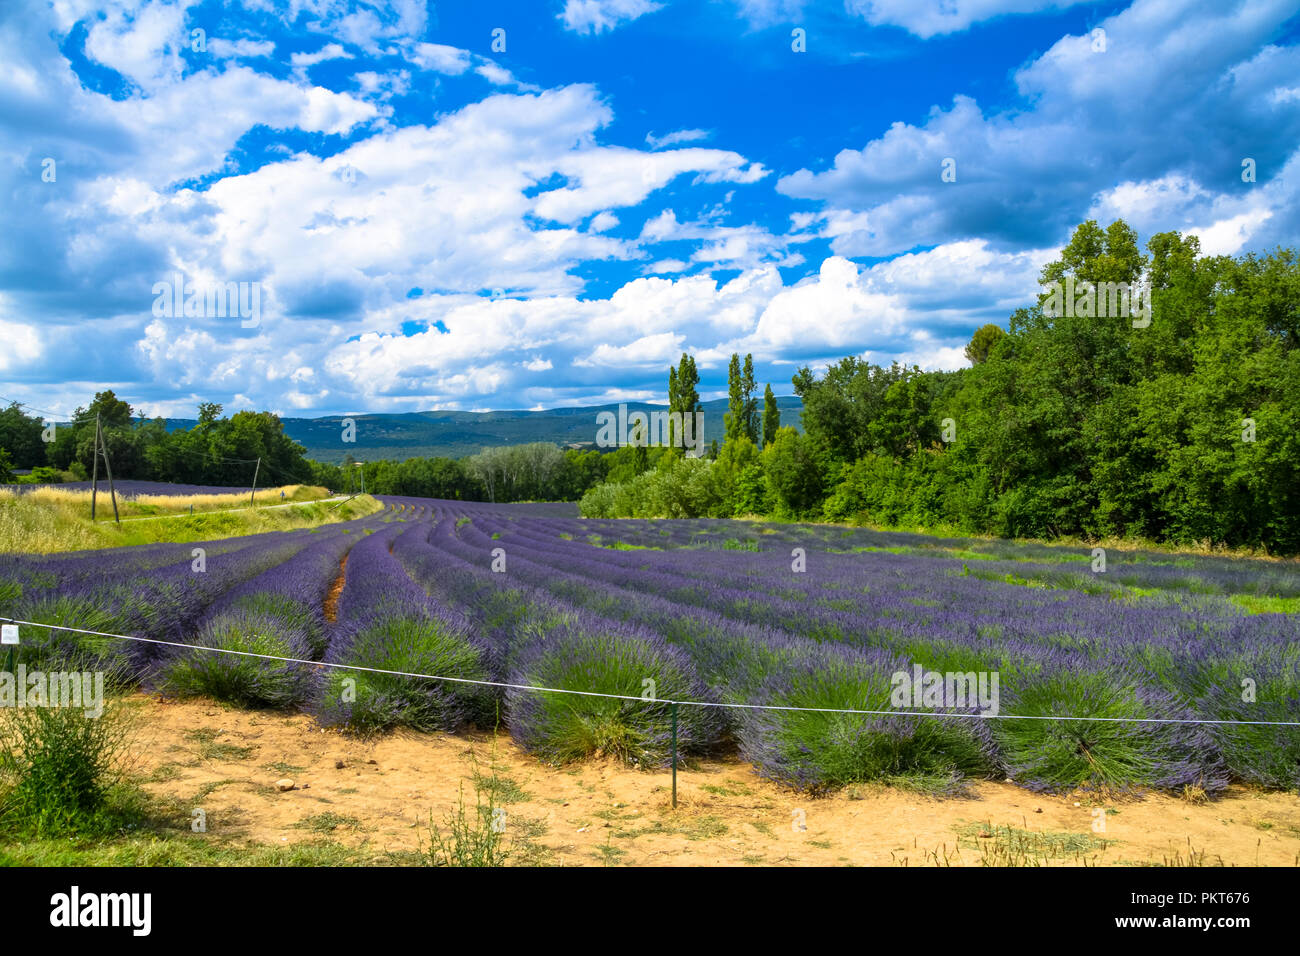 Champs de lavande en fleurs près du village médiéval de Gordes dans le Luberon en Provence, France Banque D'Images